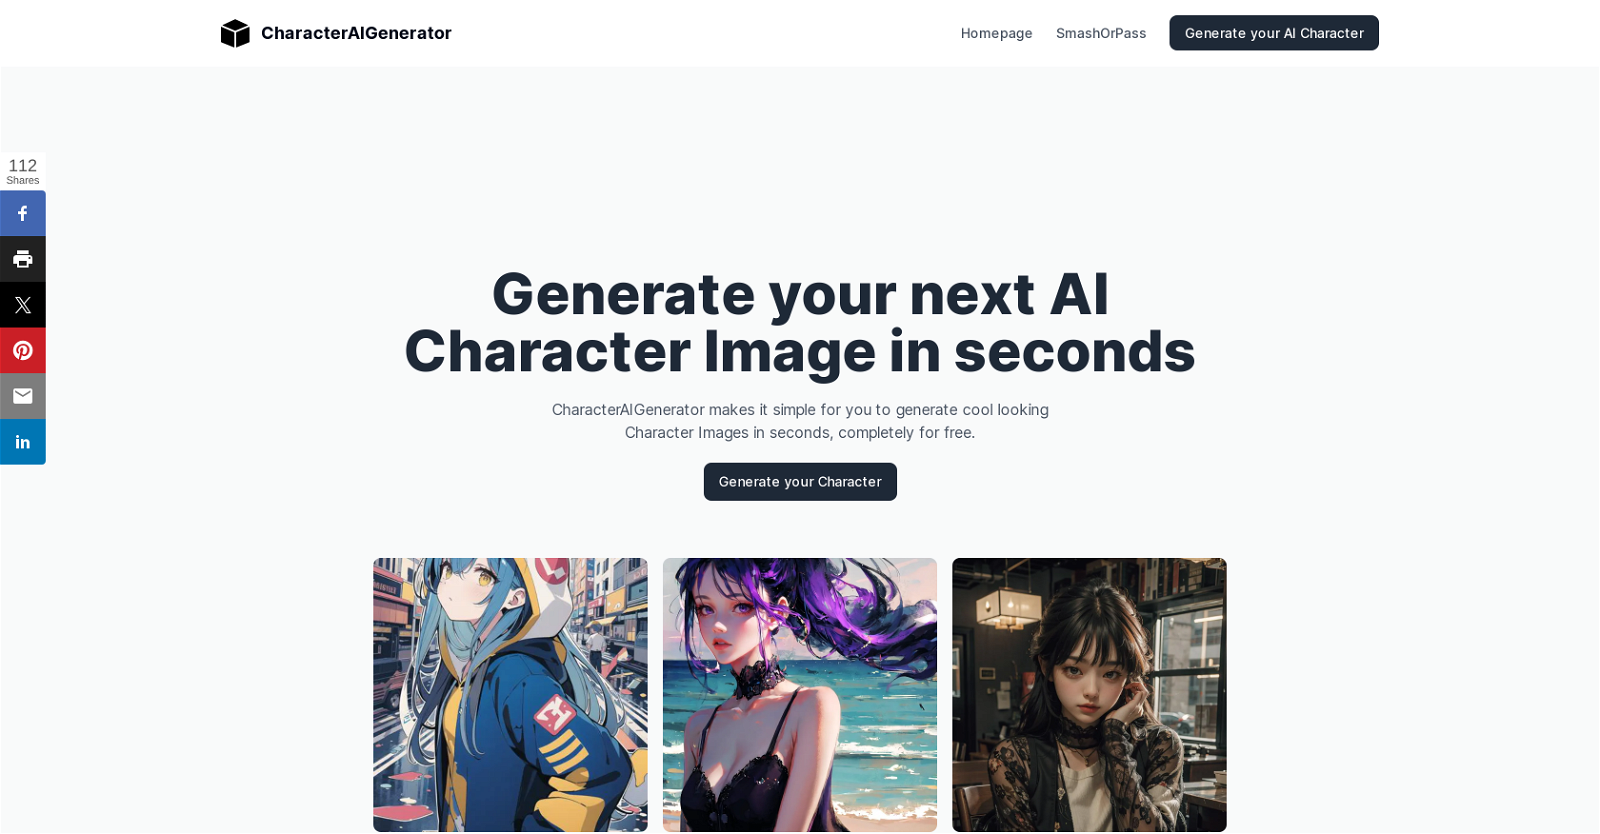 CharacterAI Generator website